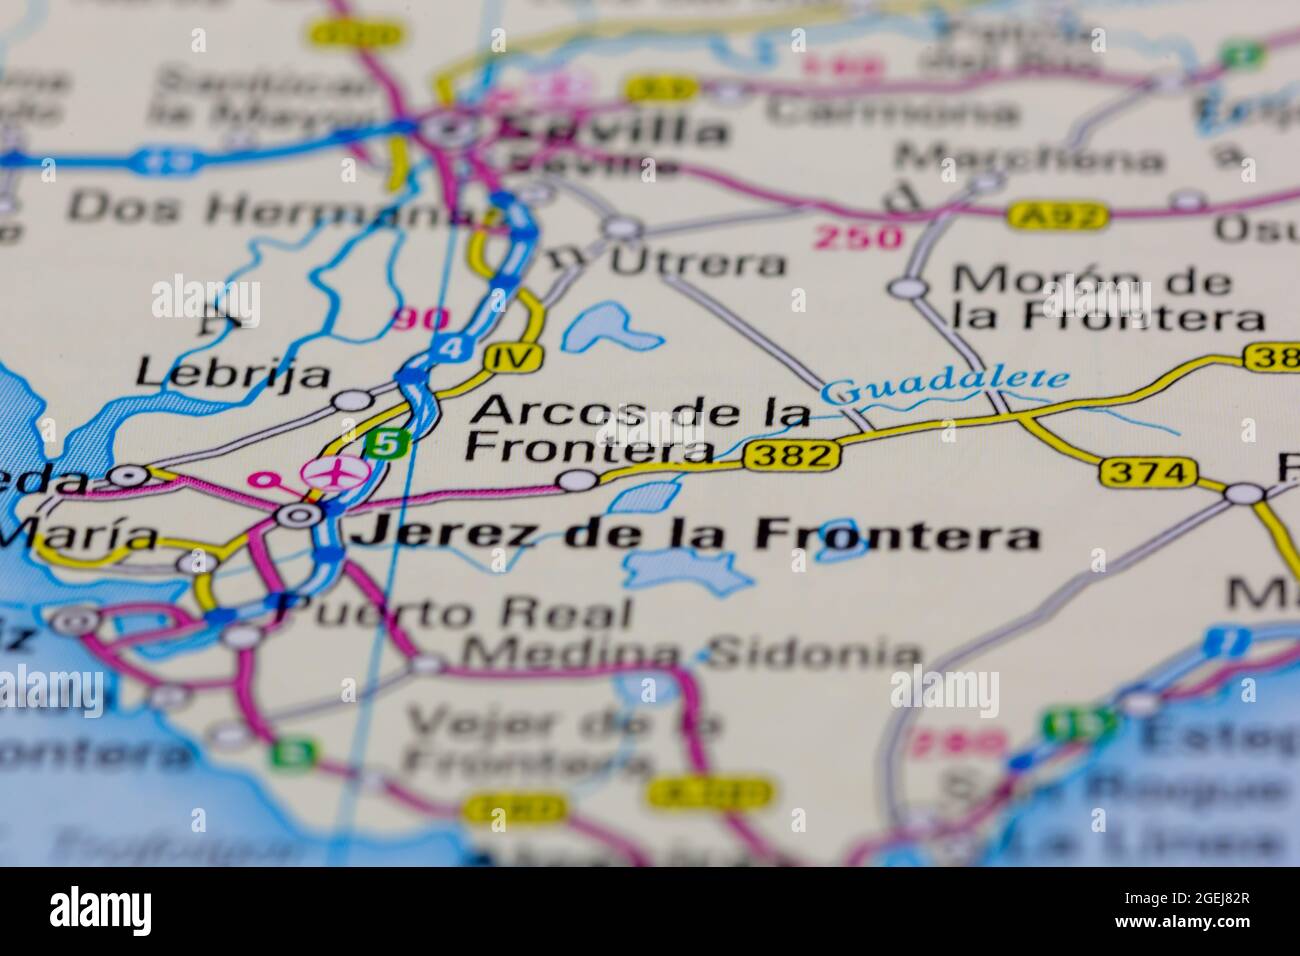 Arcos de la Frontera España se muestra en un mapa de carreteras o en un mapa geográfico Foto de stock